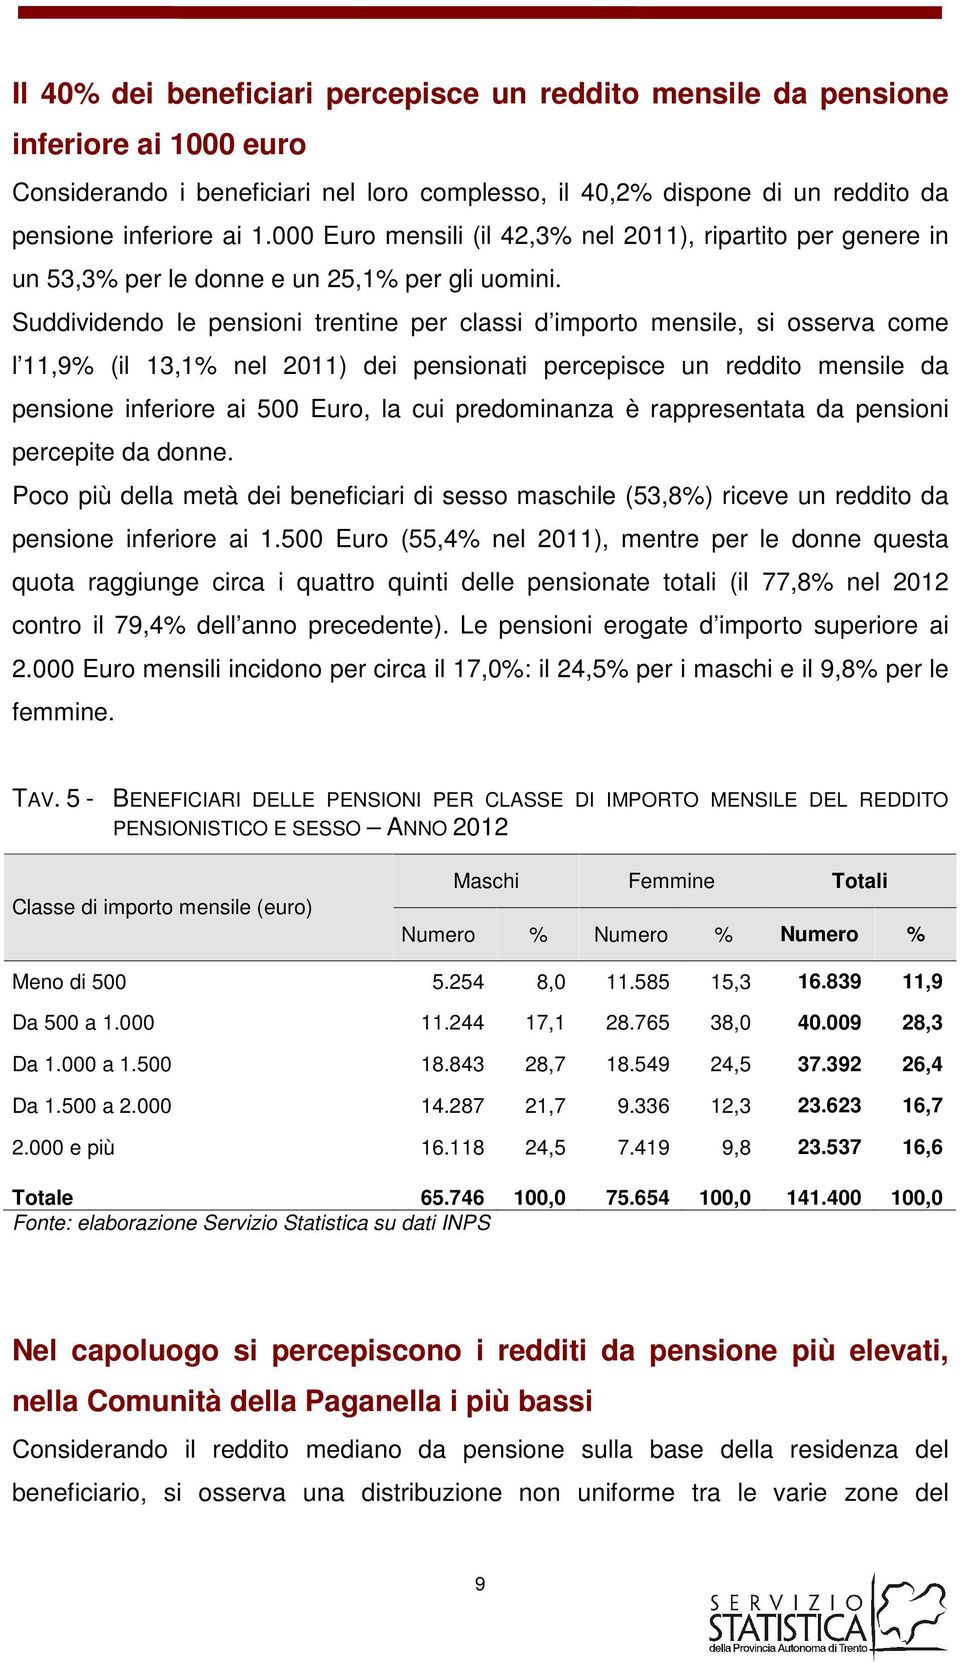 Suddividendo le pensioni trentine per classi d importo mensile, si osserva come l 11,9 (il 13,1 nel 2011) dei pensionati percepisce un reddito mensile da pensione inferiore ai 500 Euro, la cui